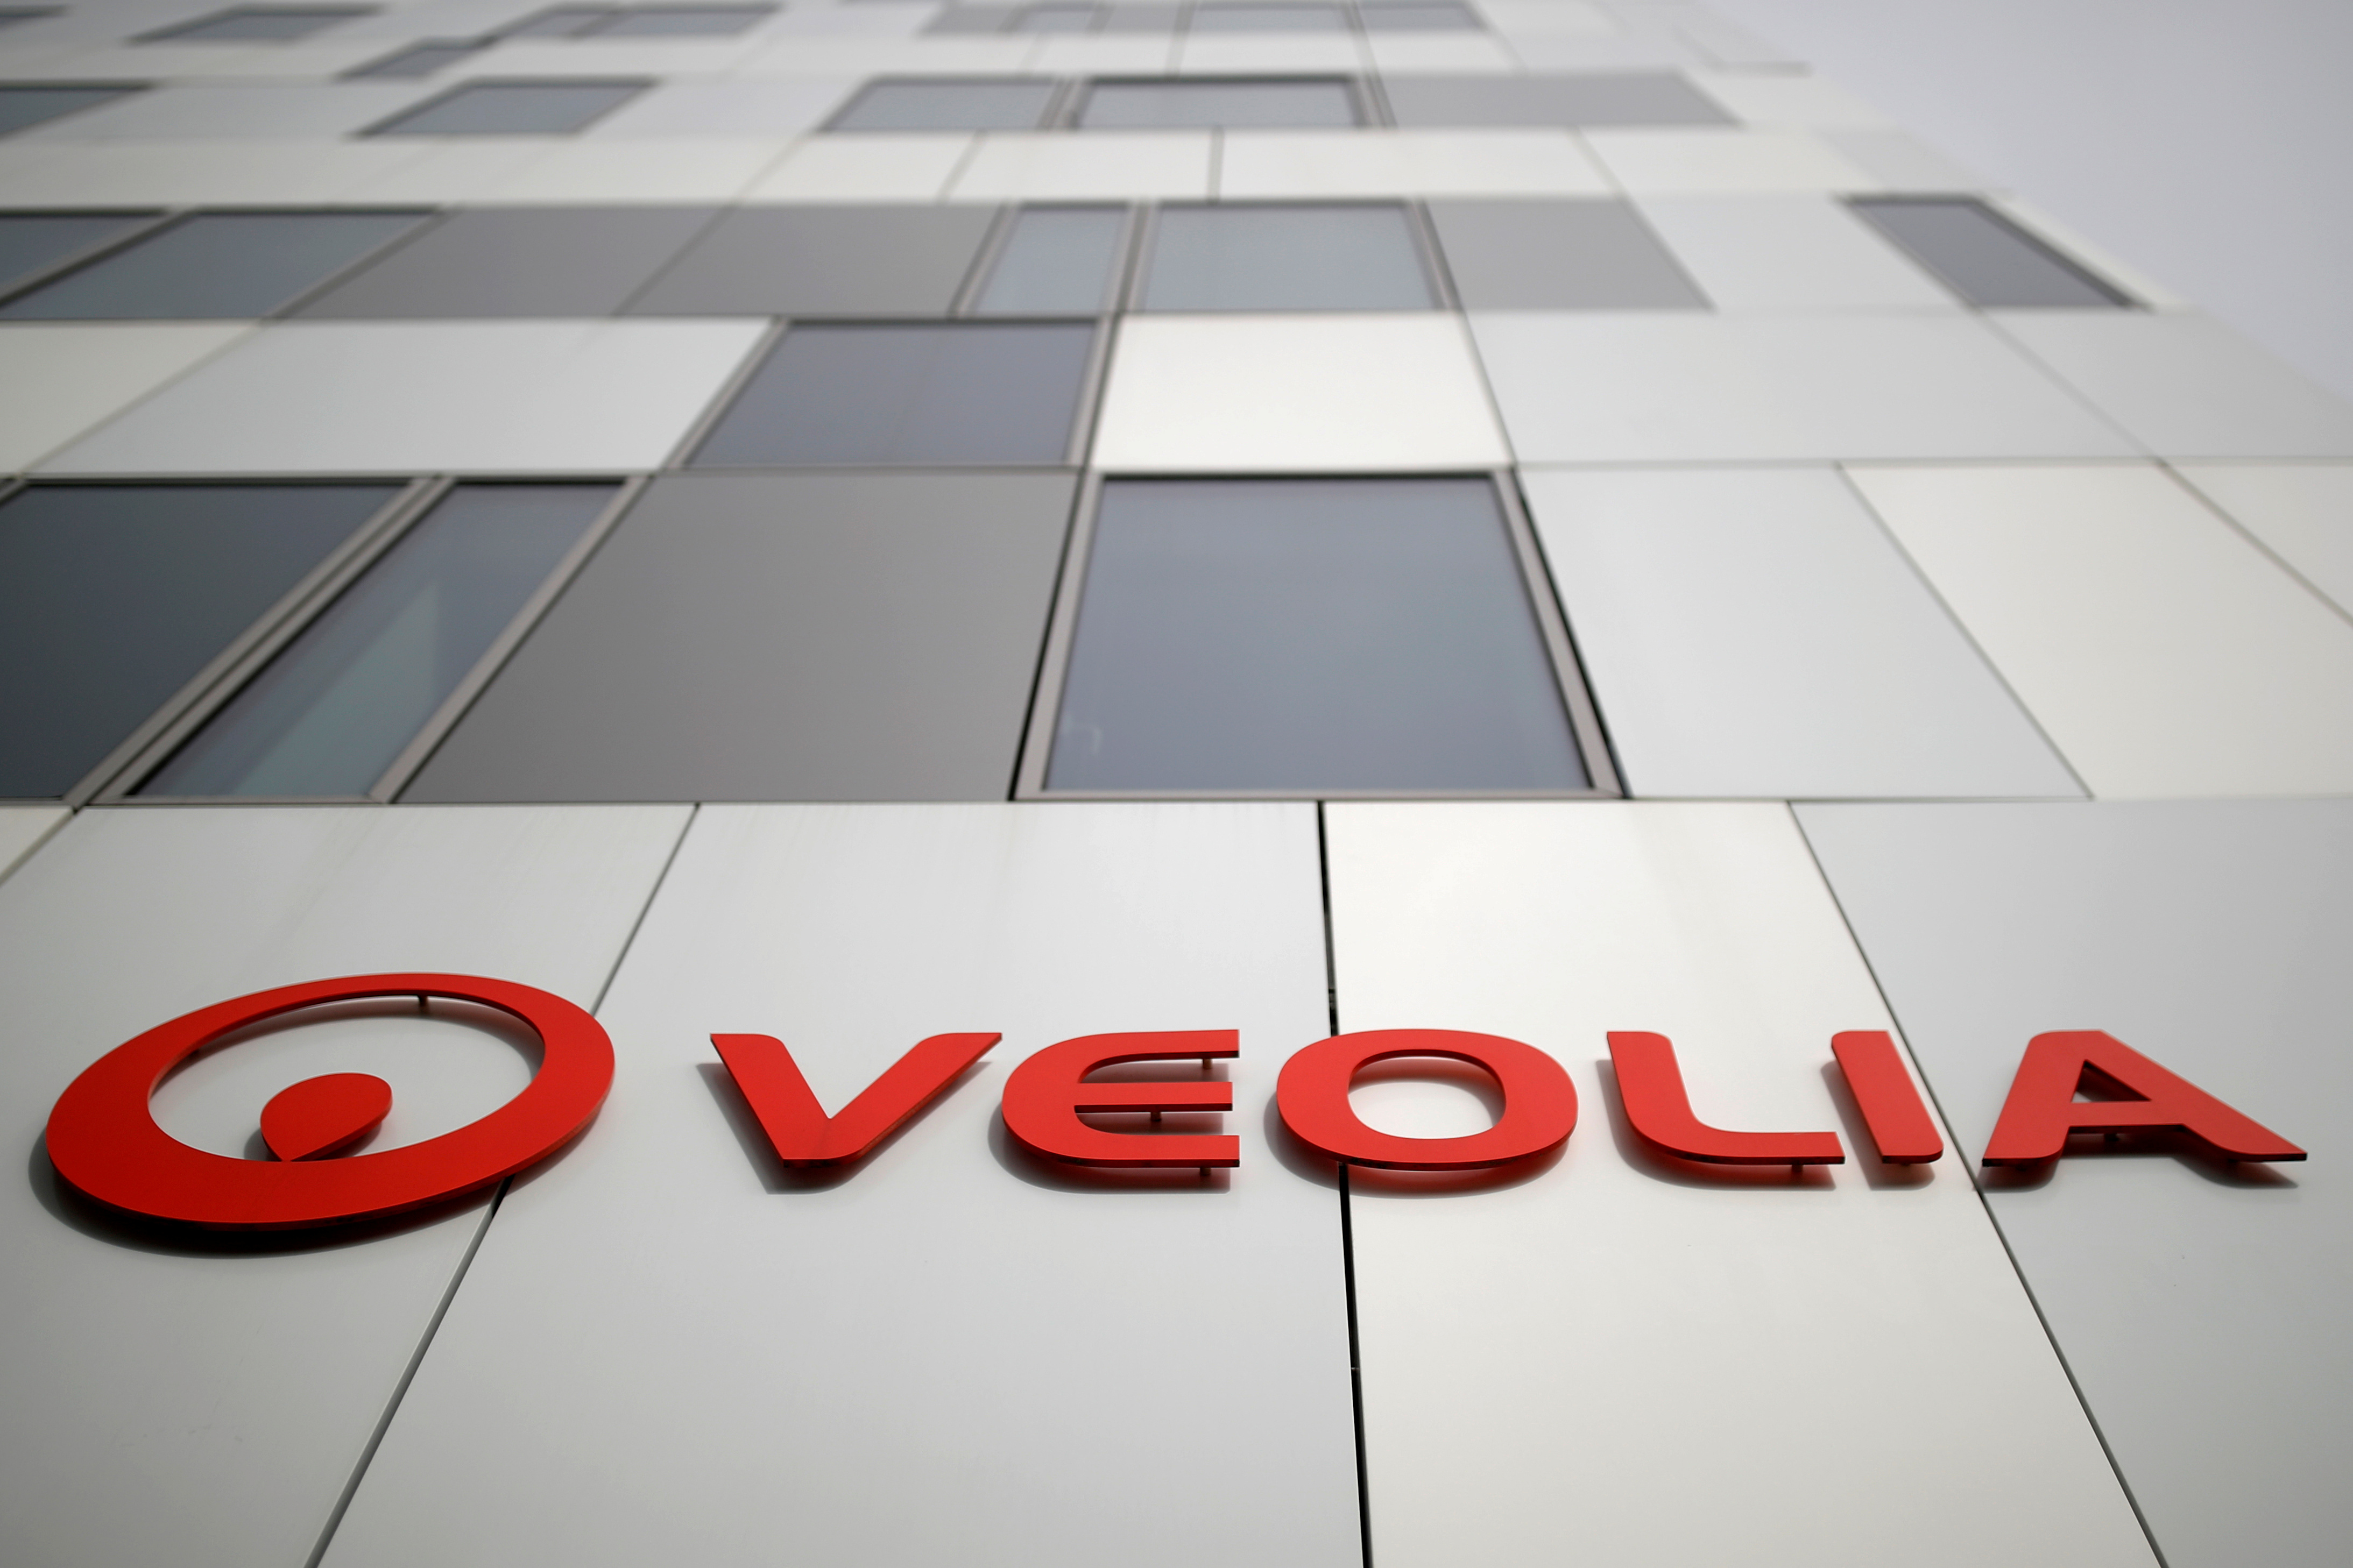 Suez: Veolia demande à la justice de suspendre toute vente d'actifs stratégiques